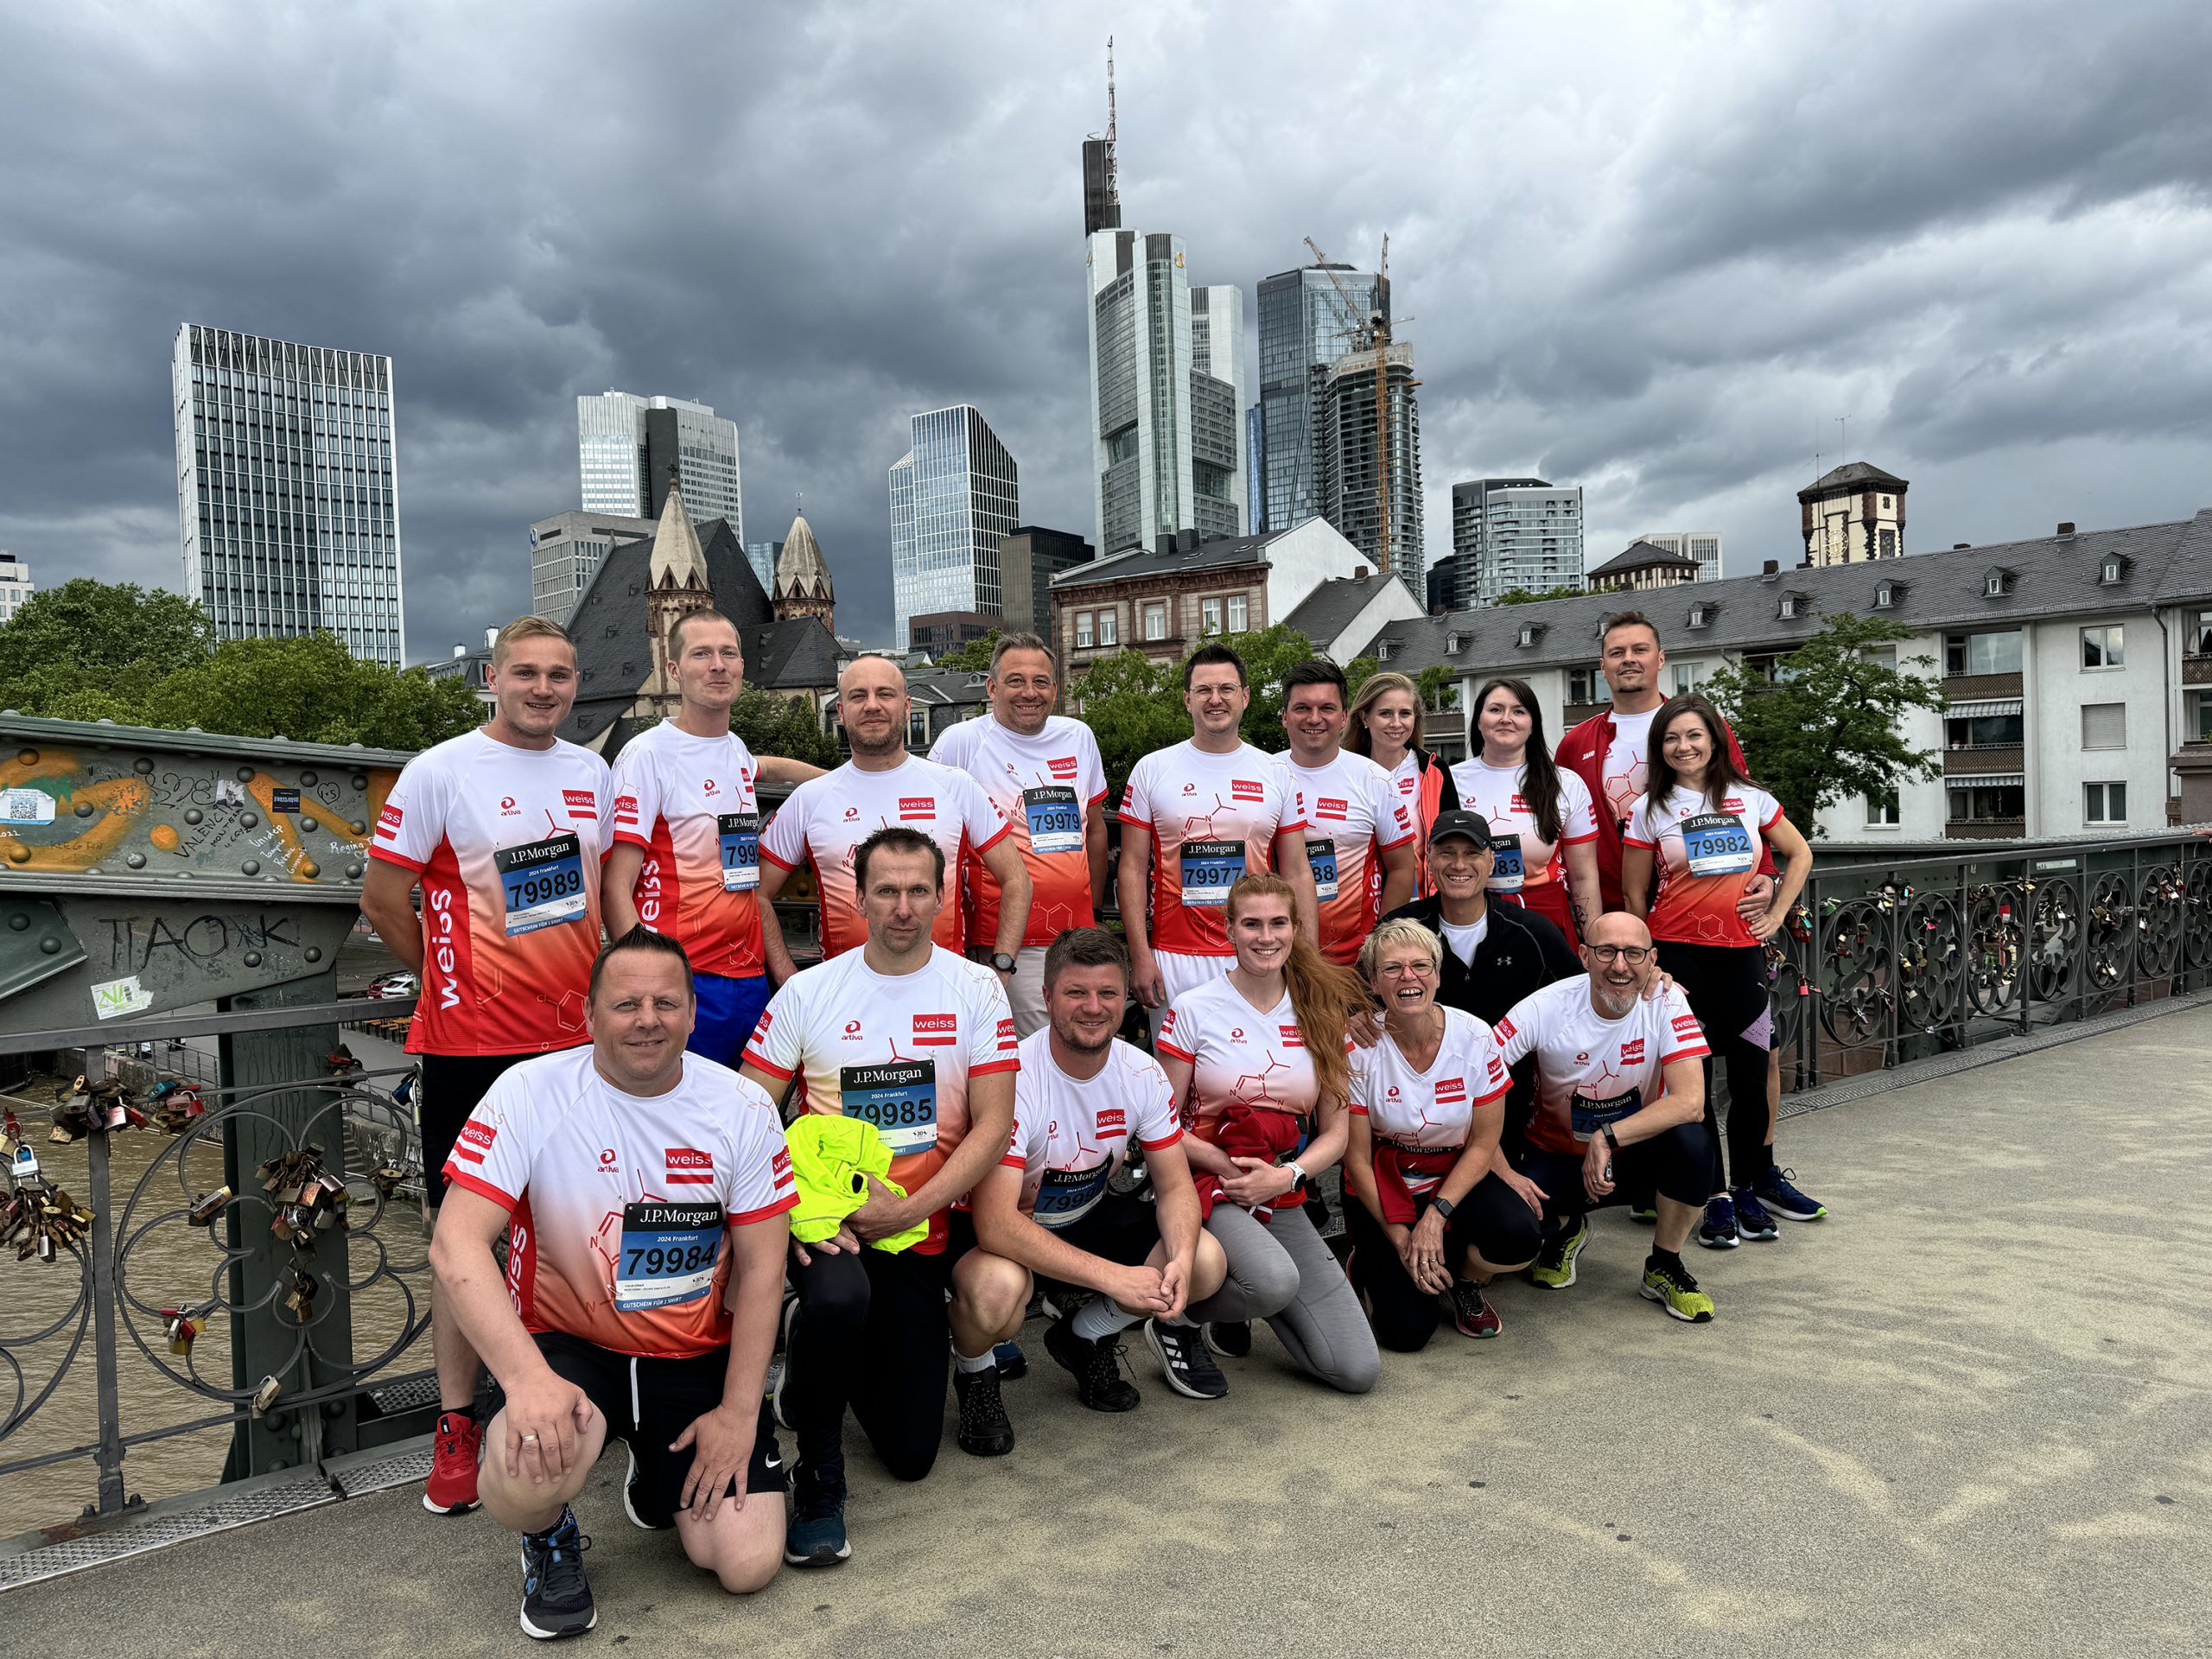 Runner by Weiss - Skyline Frankfurt